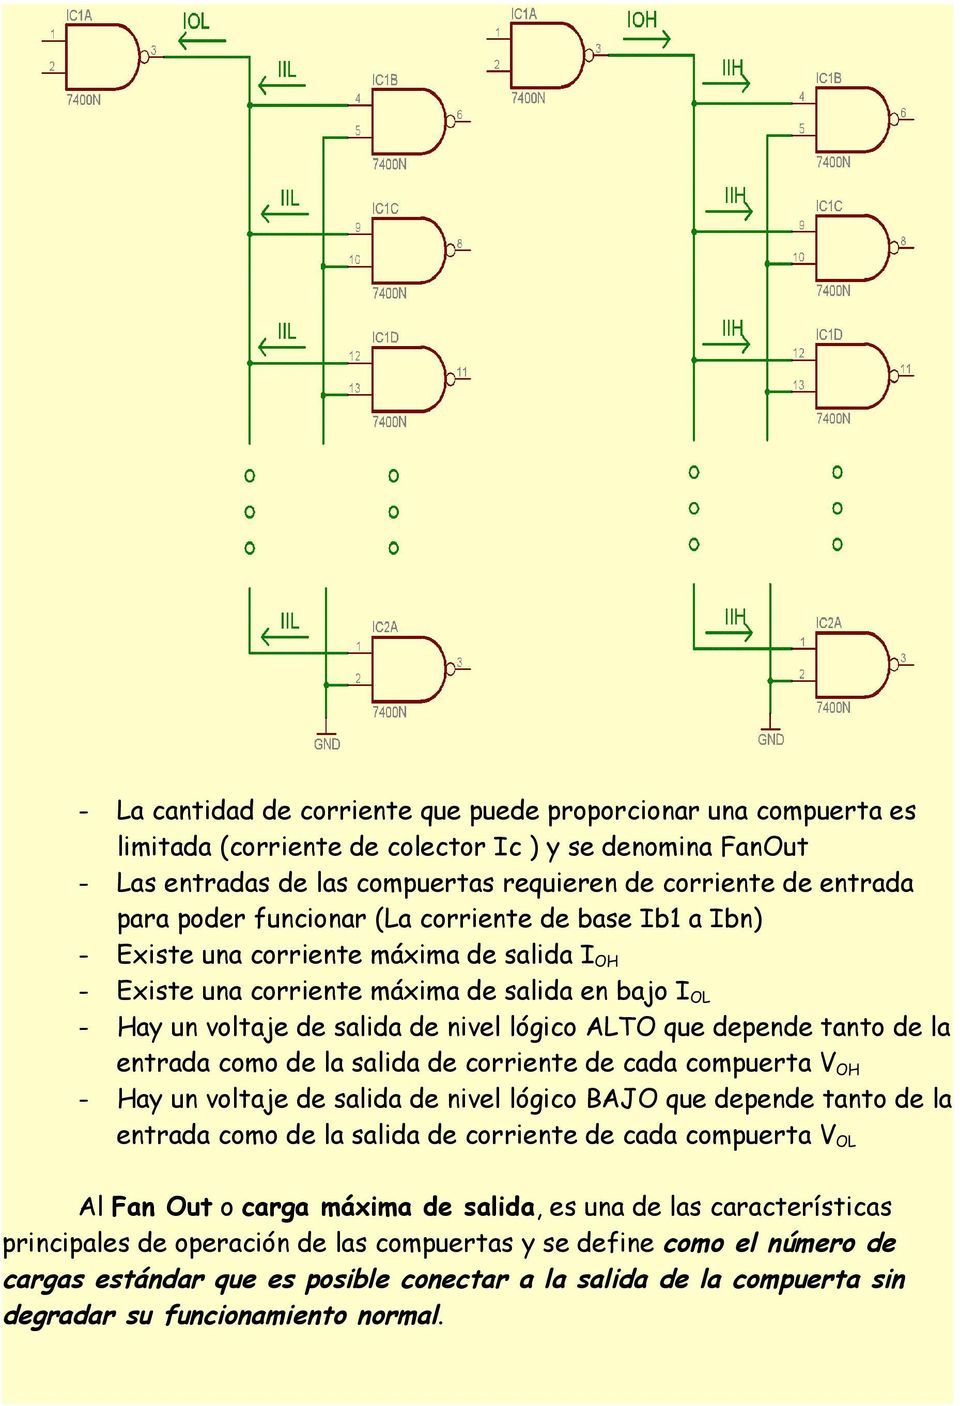 depende tanto de la entrada como de la salida de corriente de cada compuerta V OH - Hay un voltaje de salida de nivel lógico BAJO que depende tanto de la entrada como de la salida de corriente de